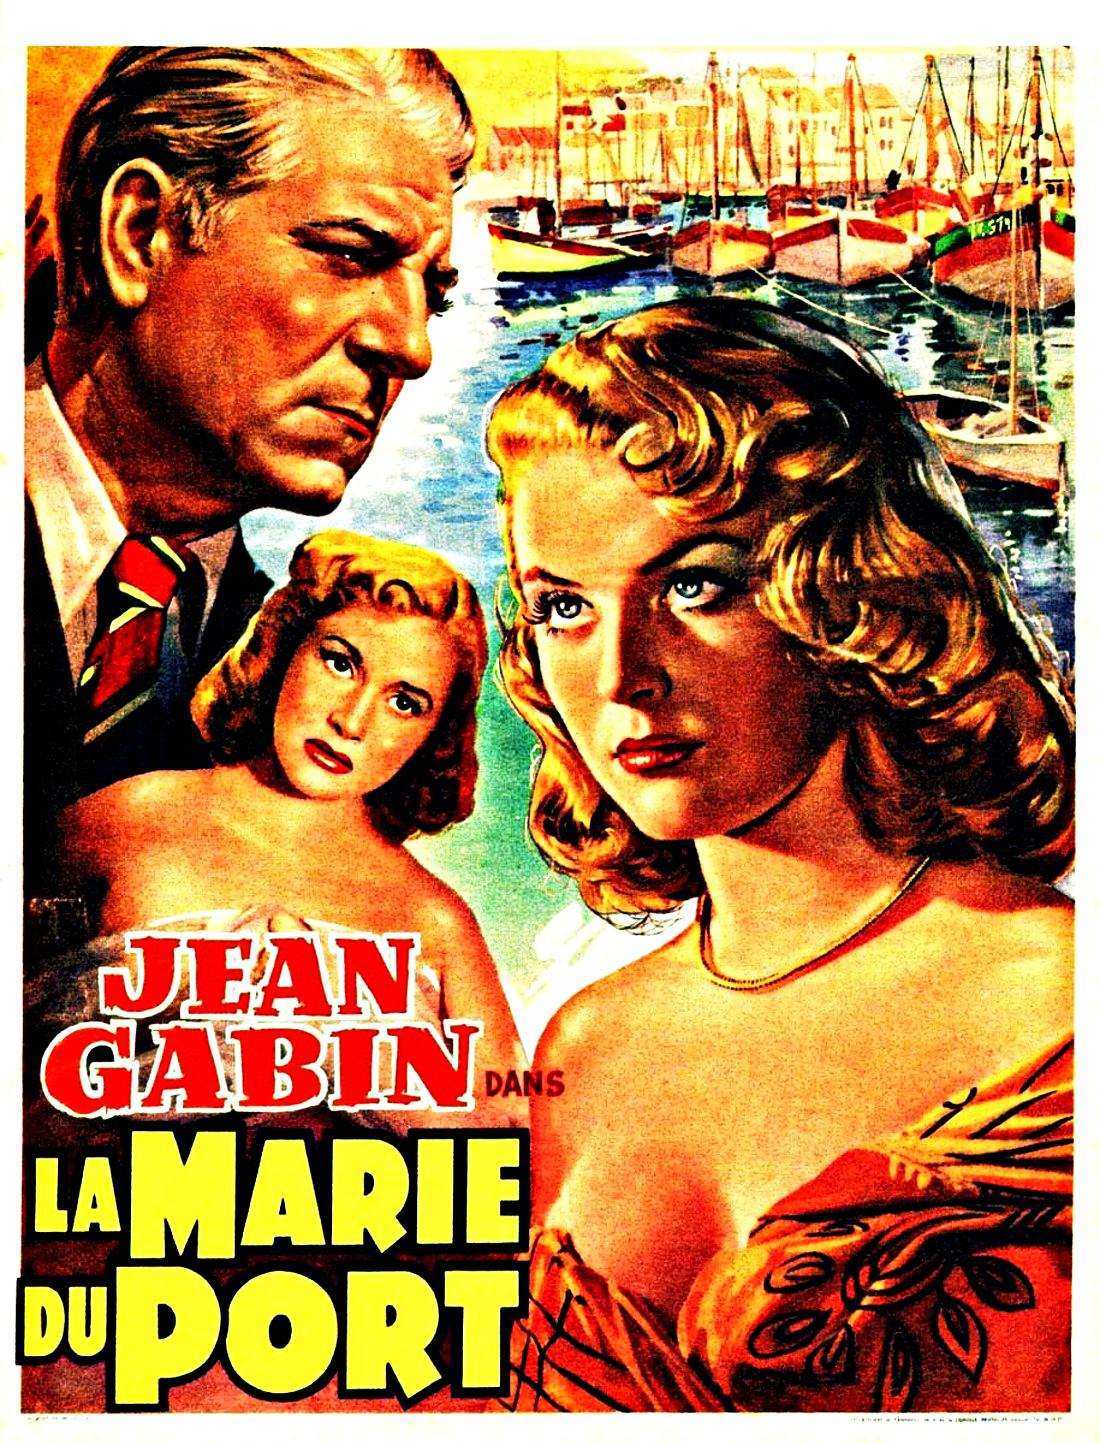 La Marie du port (1950) Screenshot 4 